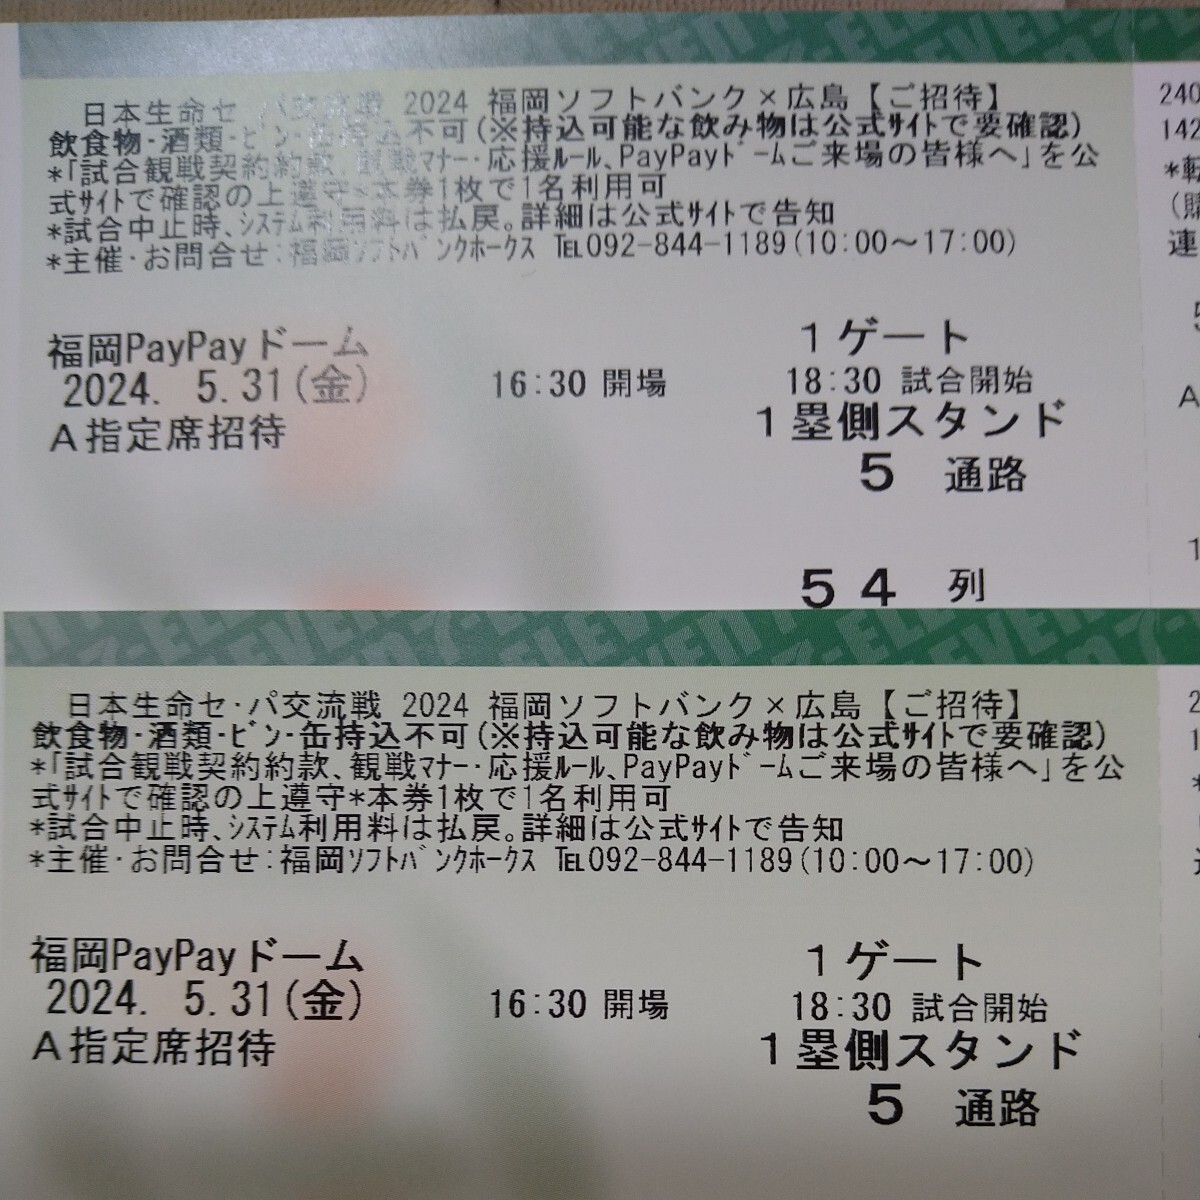 5/31( золотой ) 5 месяц 31 день переменный ток битва Fukuoka SoftBank Hawks vs Hiroshima carp A указание сиденье 1. сторона пара 54 ряд Mizuho paypay купол 